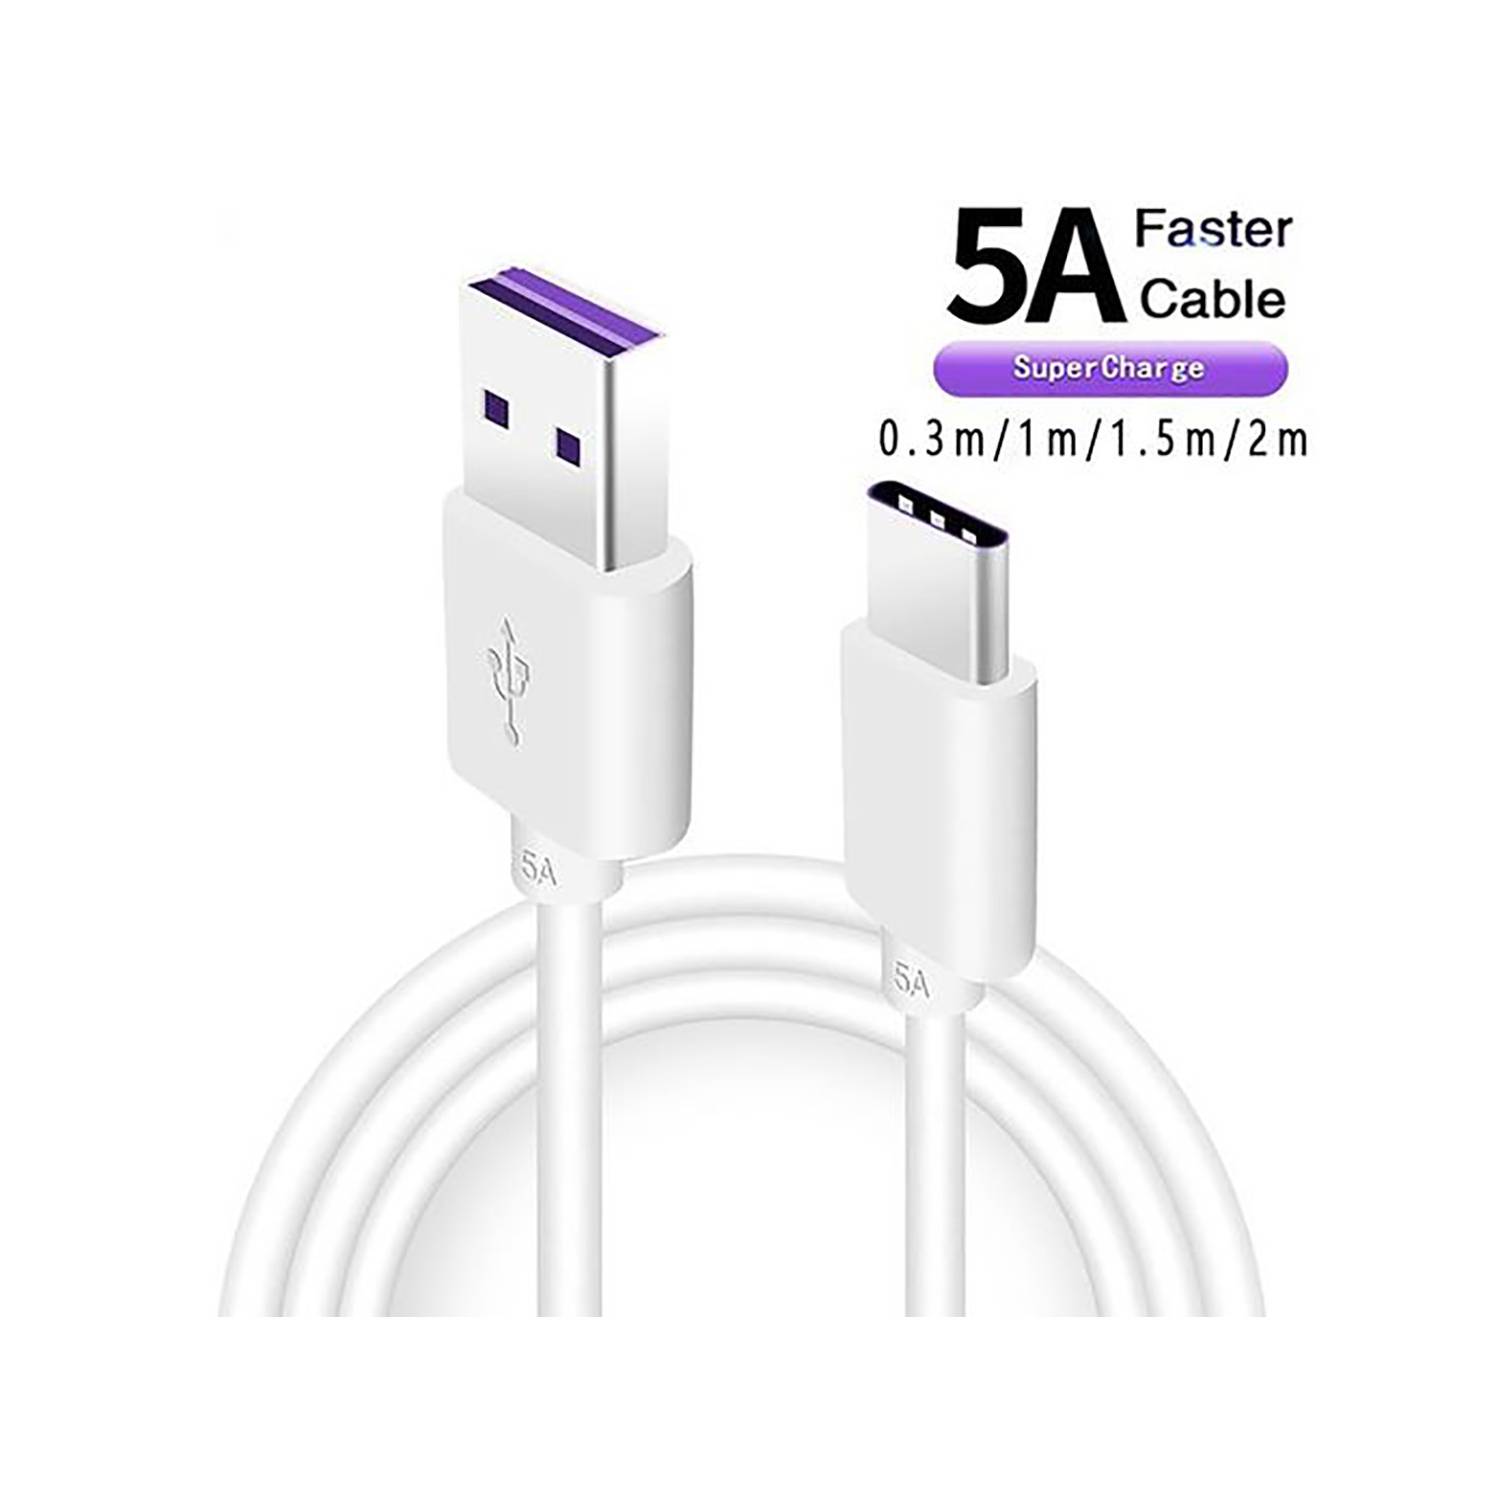 Cable USB tipo C Carga Rápida